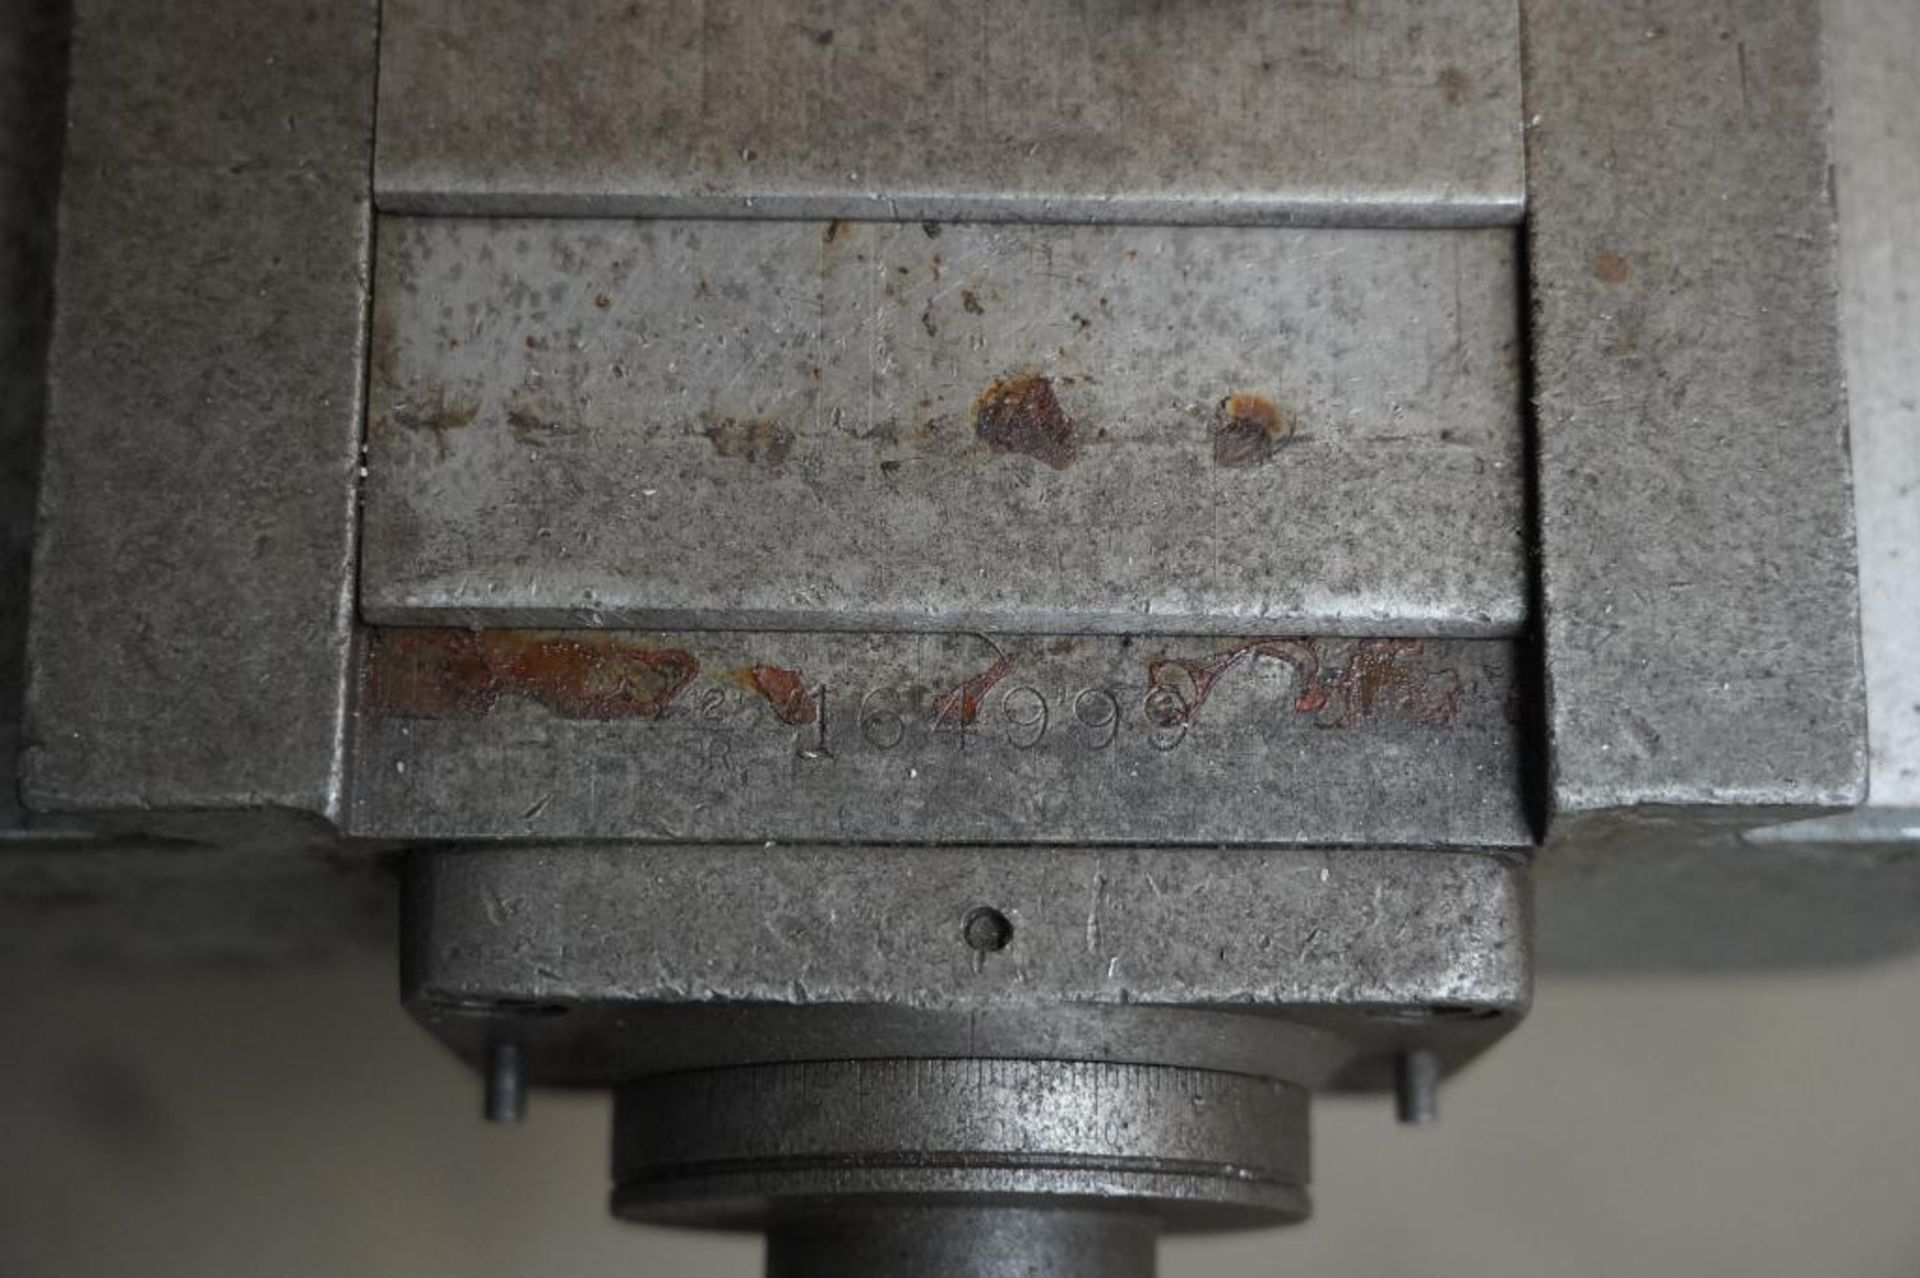 Bridgeport Vertical Milling Machine - Image 9 of 10